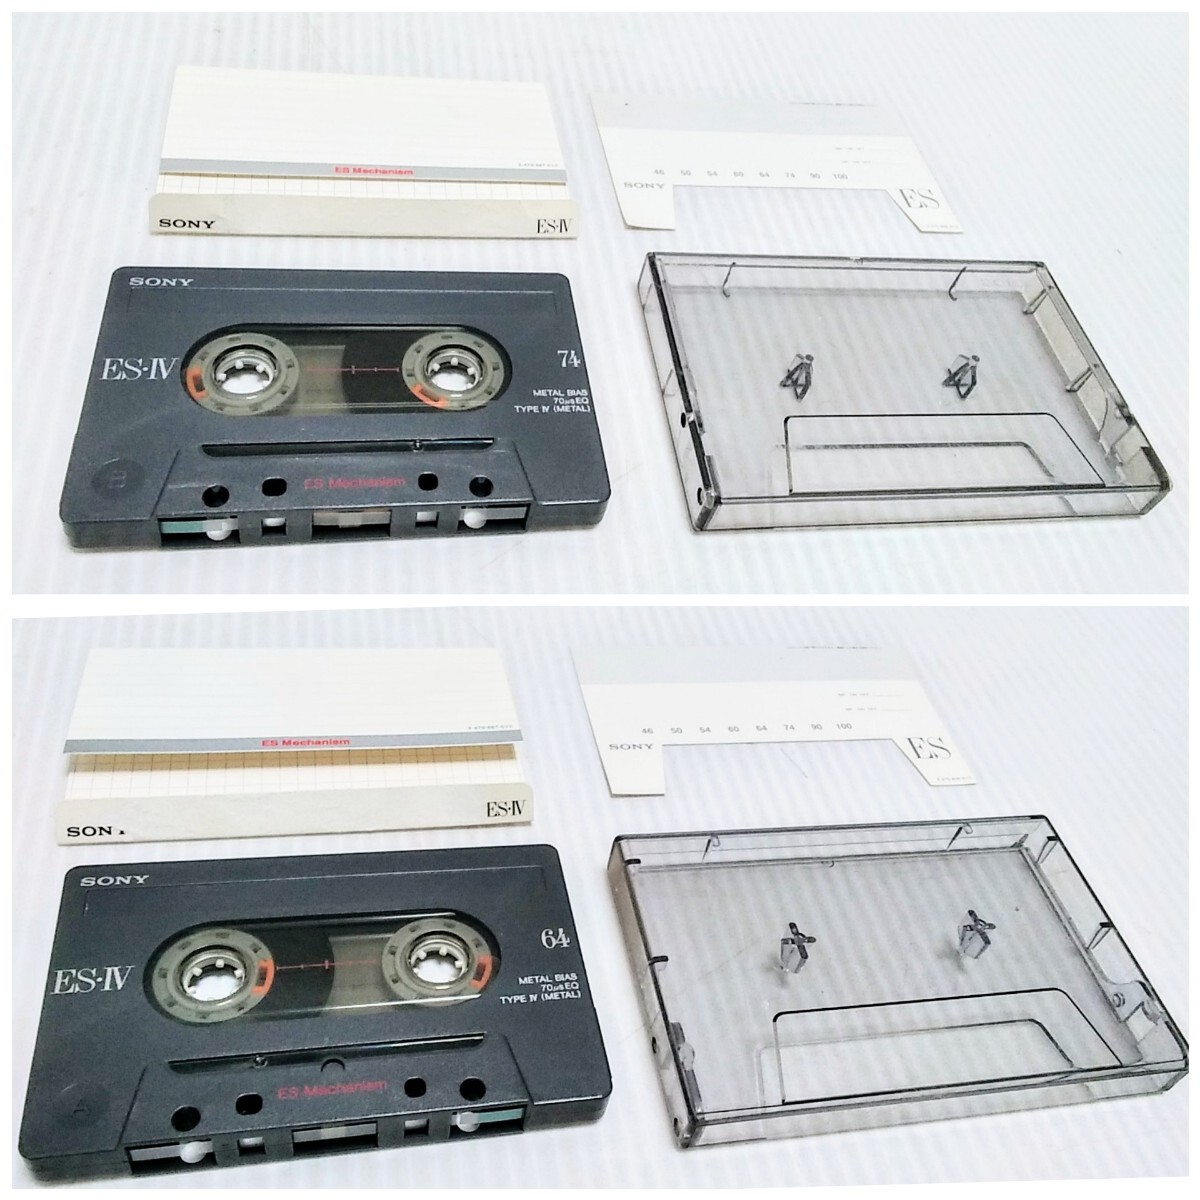 当時物 メタルカセットテープ SONY ES-IV 64分 74分 Type IV 2本 メタルテープ カセットテープ 使用済み 中古 の画像1